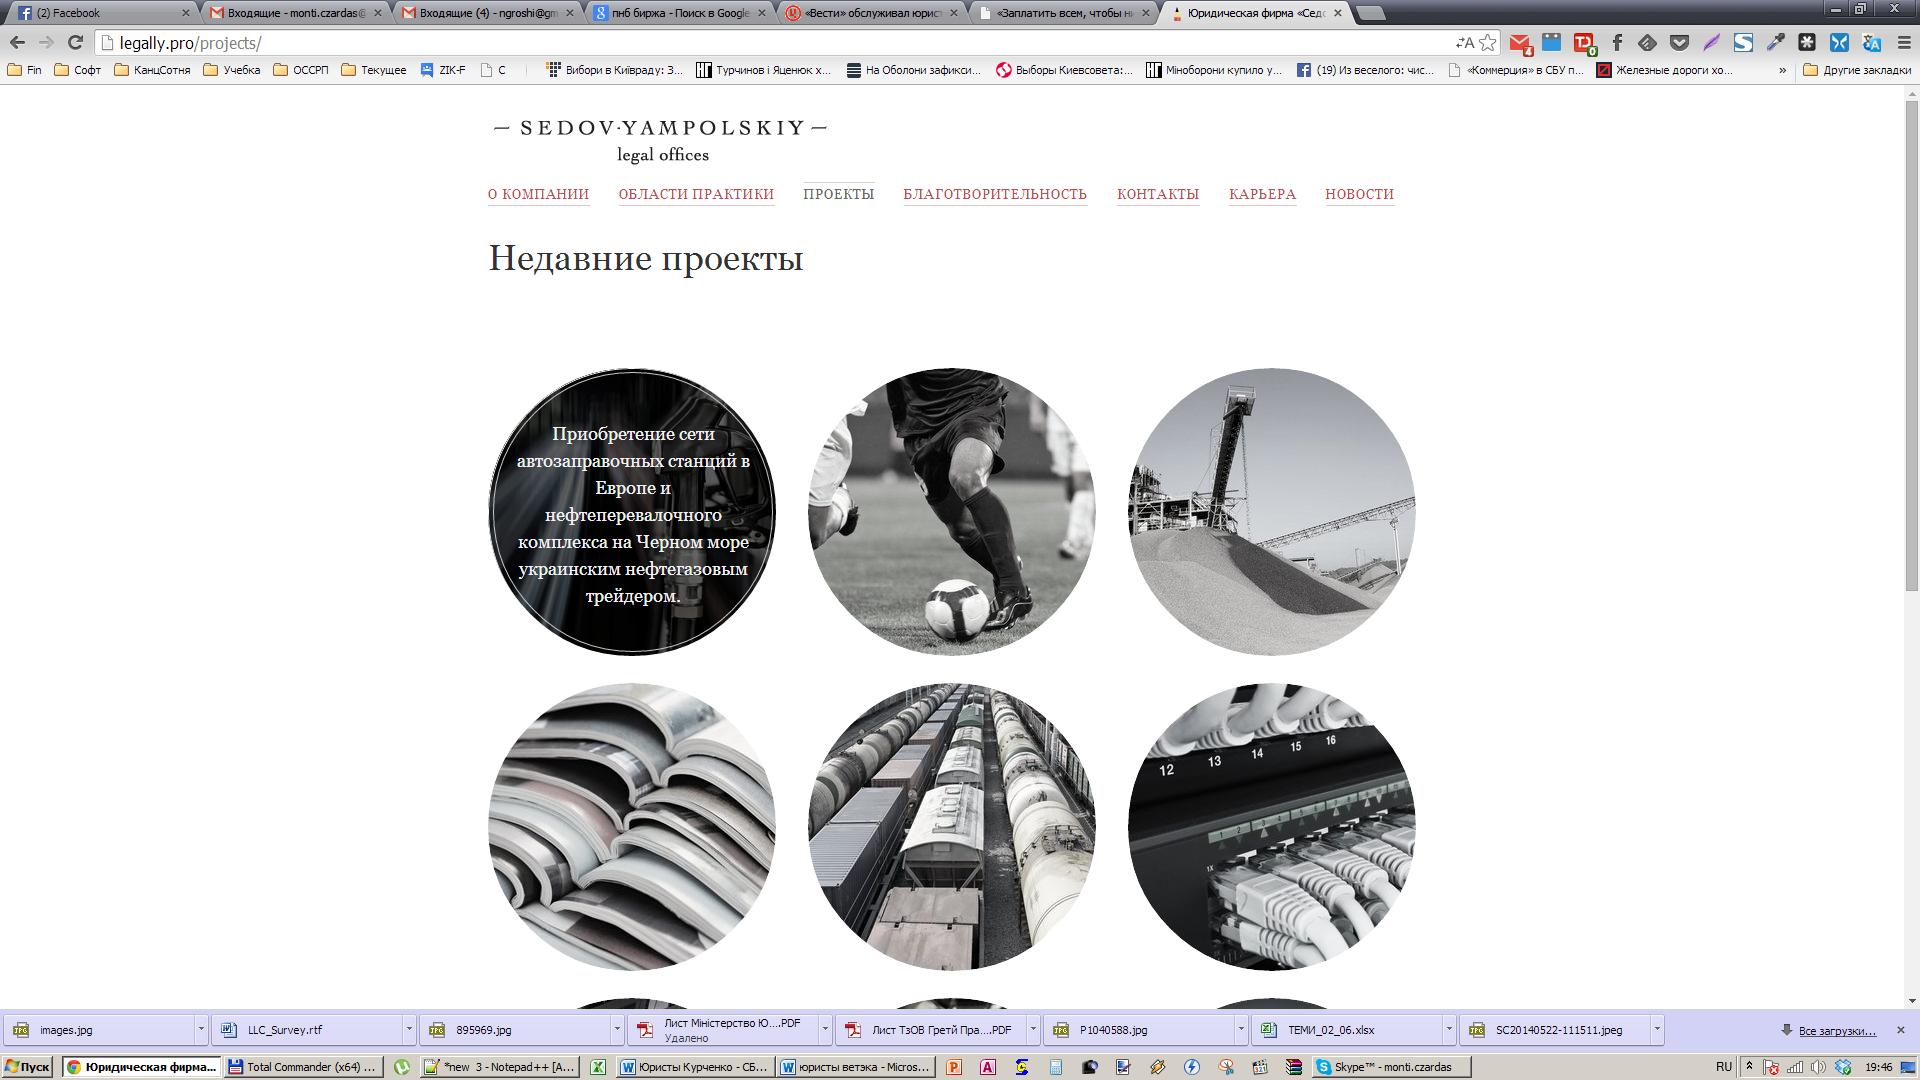 yanukovych-leaks/kurchenko-documents9.jpg